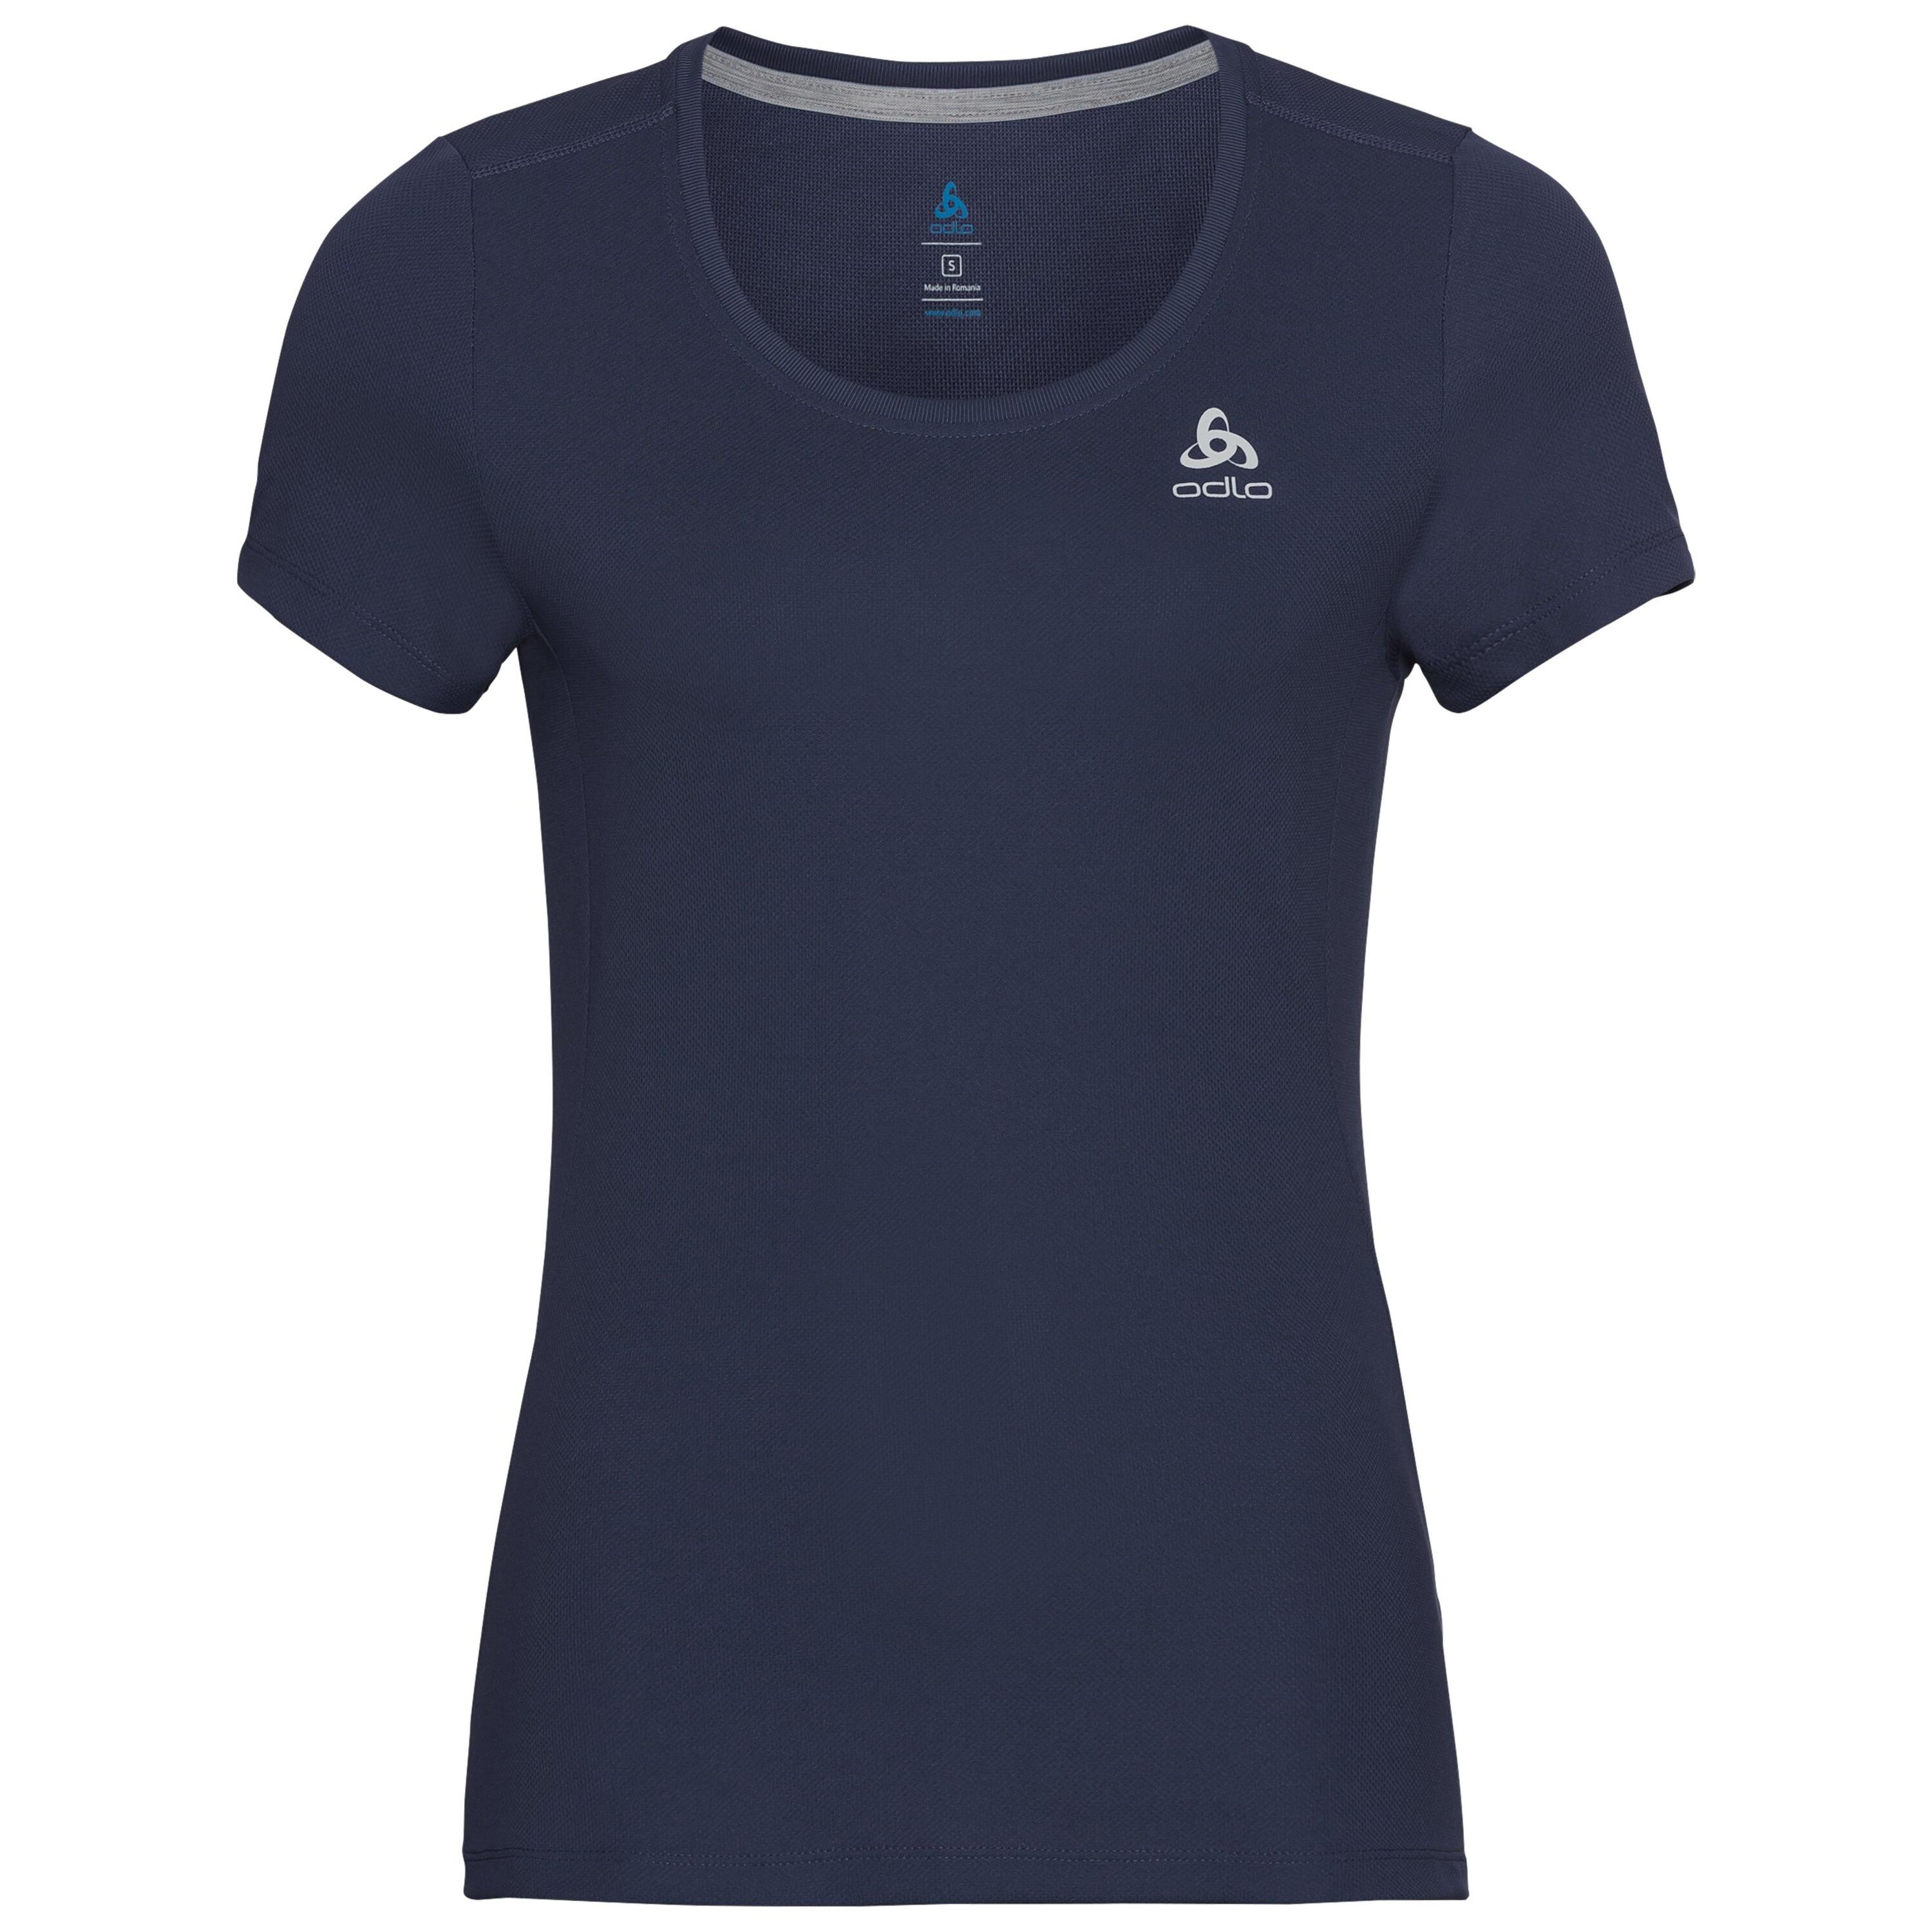 ODLO Maren T-Shirt für Damen, S, marineblau